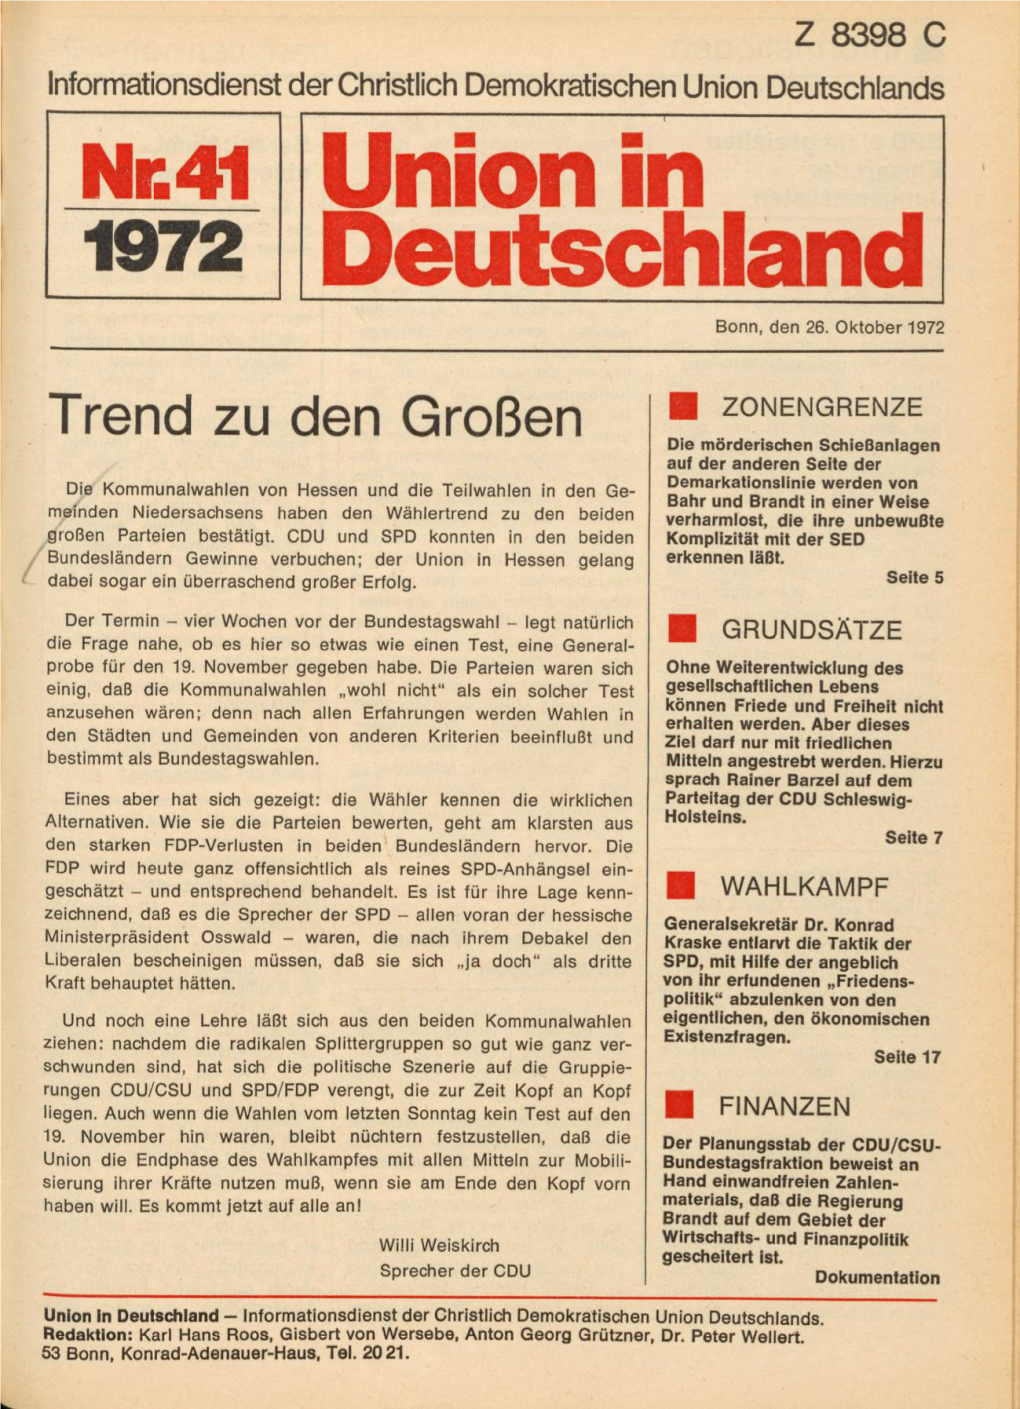 UID 1972 Nr. 41, Union in Deutschland